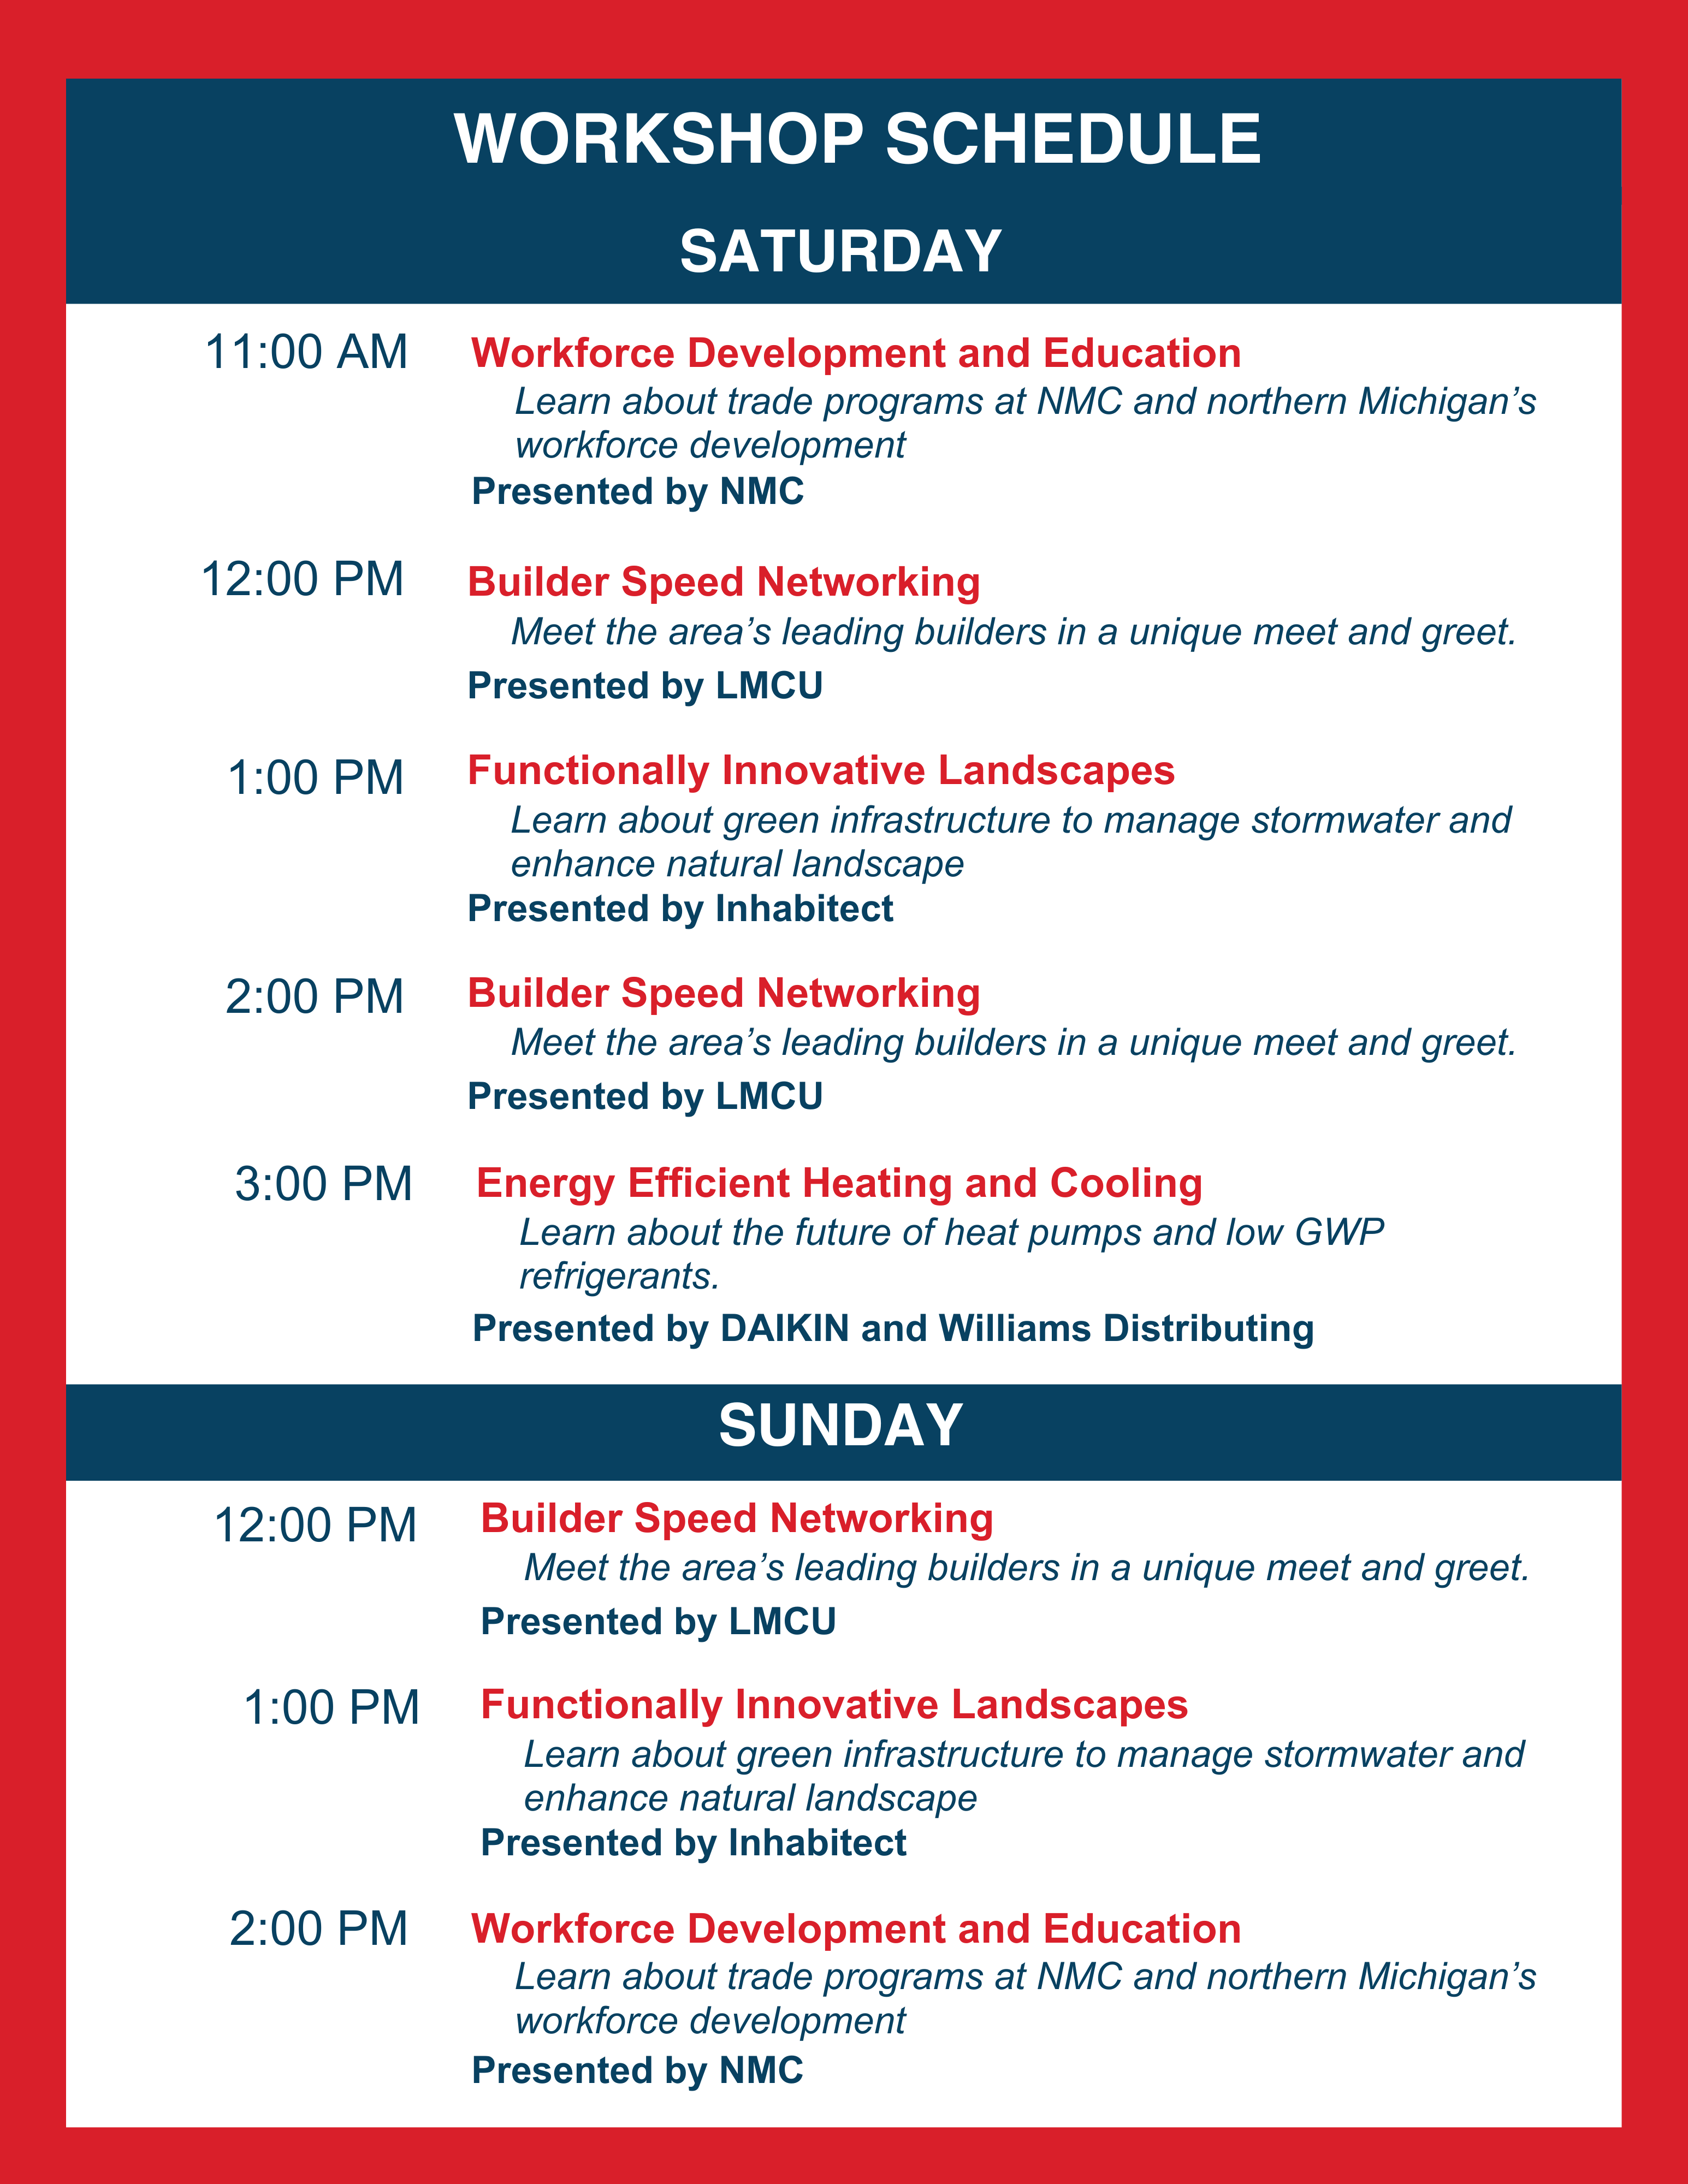 Seminar Schedule